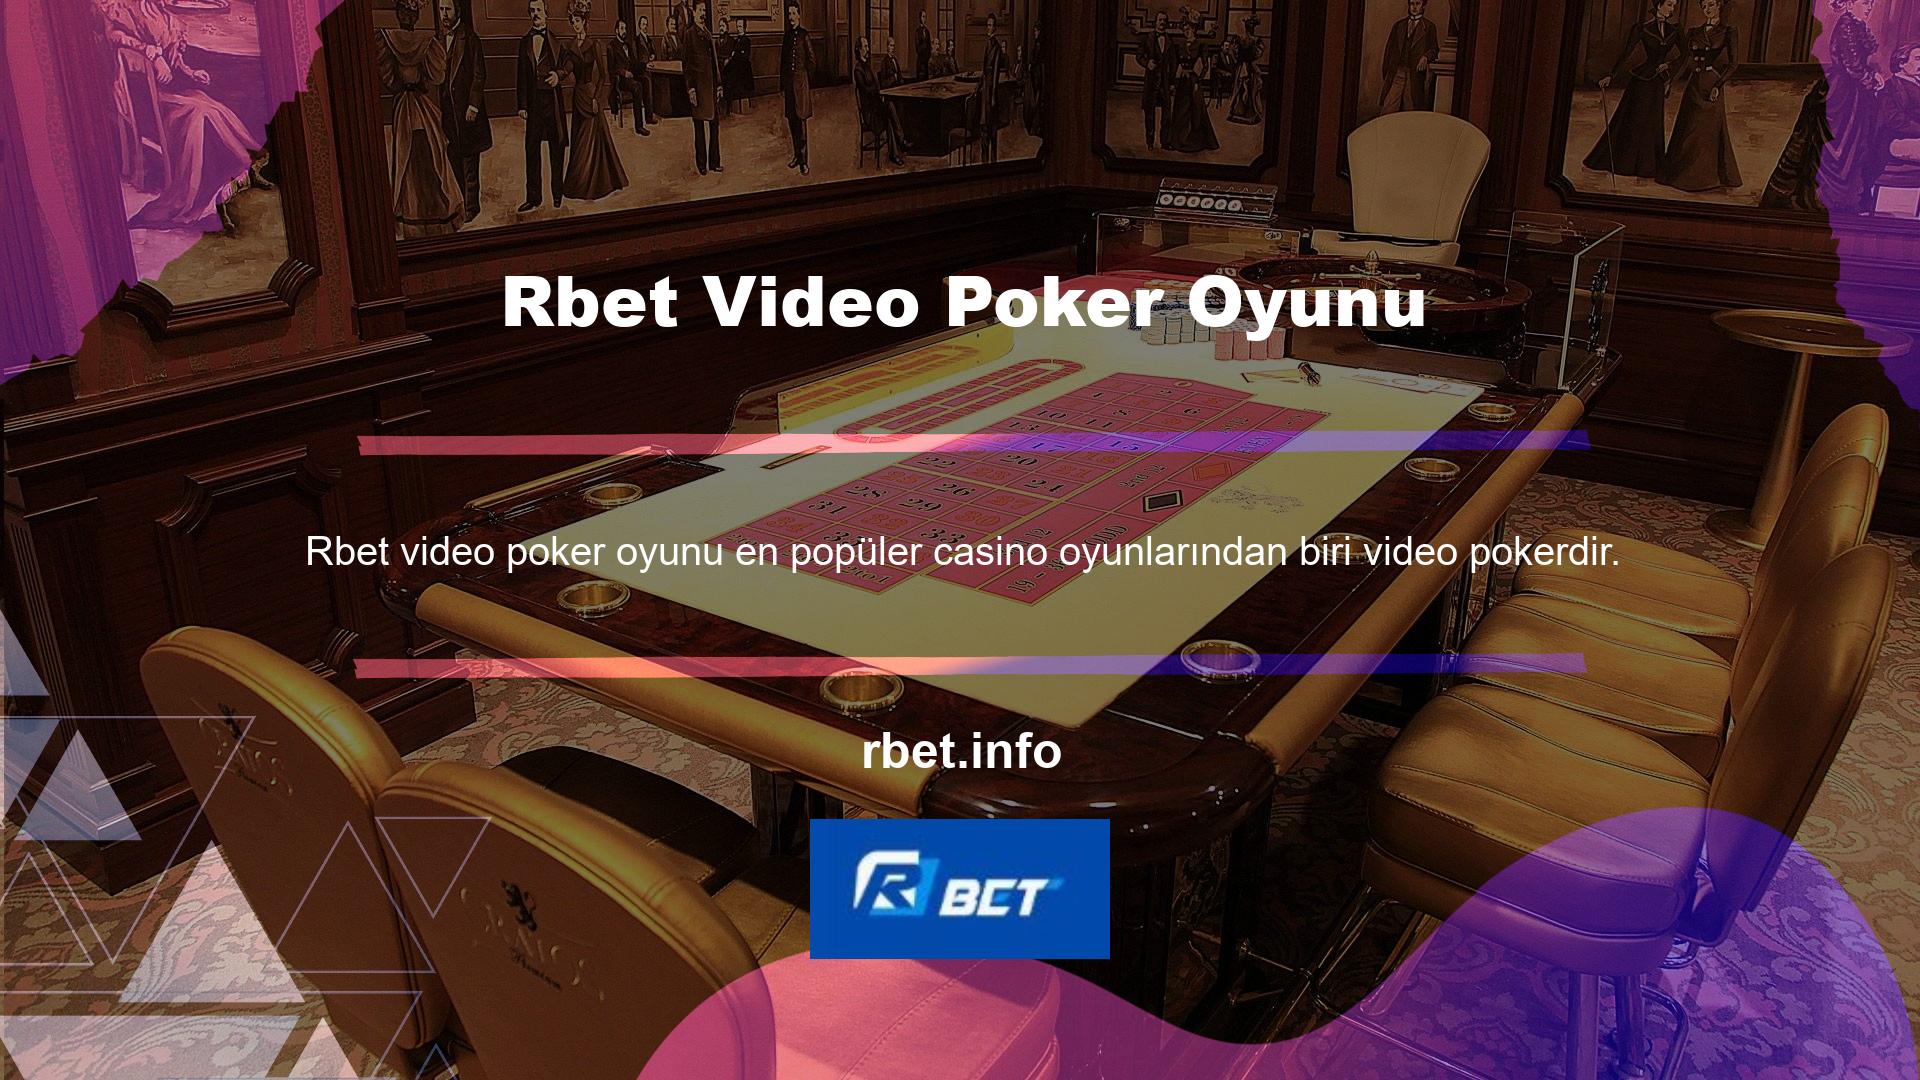 Casino oyunları kitaplığının bir kısmı aynı zamanda video poker varyasyonlarının yayın bölümüdür